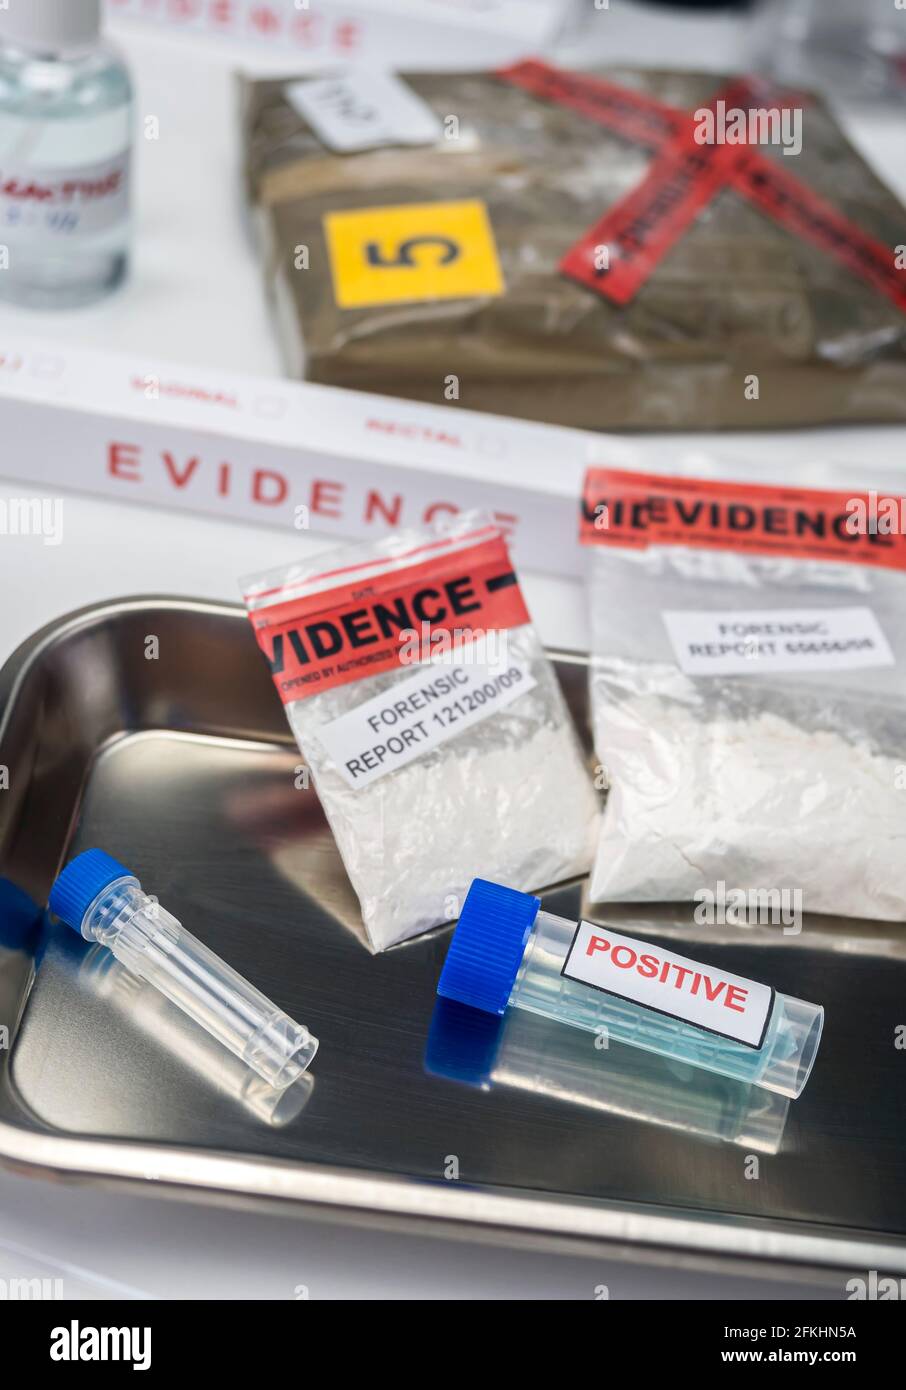 prueba positiva de drogas de laboratorio del crimen, imagen conceptual Foto de stock